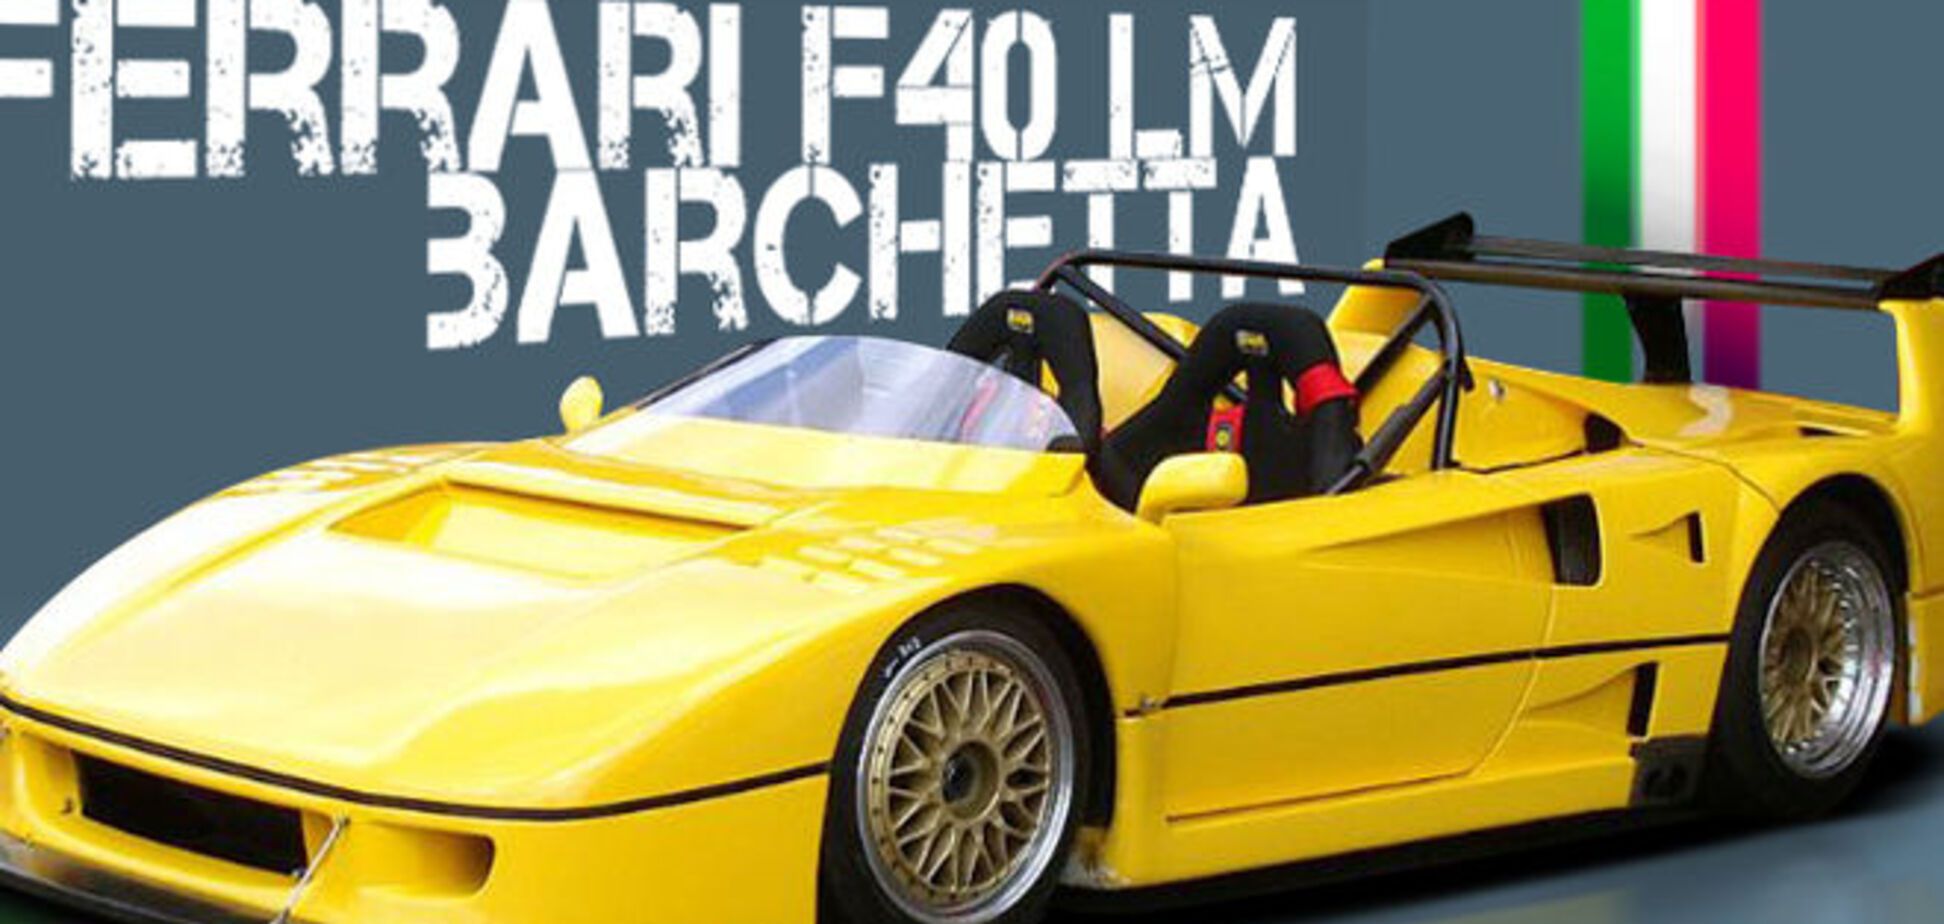 В сети появилось видео единственного в мире суперкара Ferrari F40 LM Barchetta